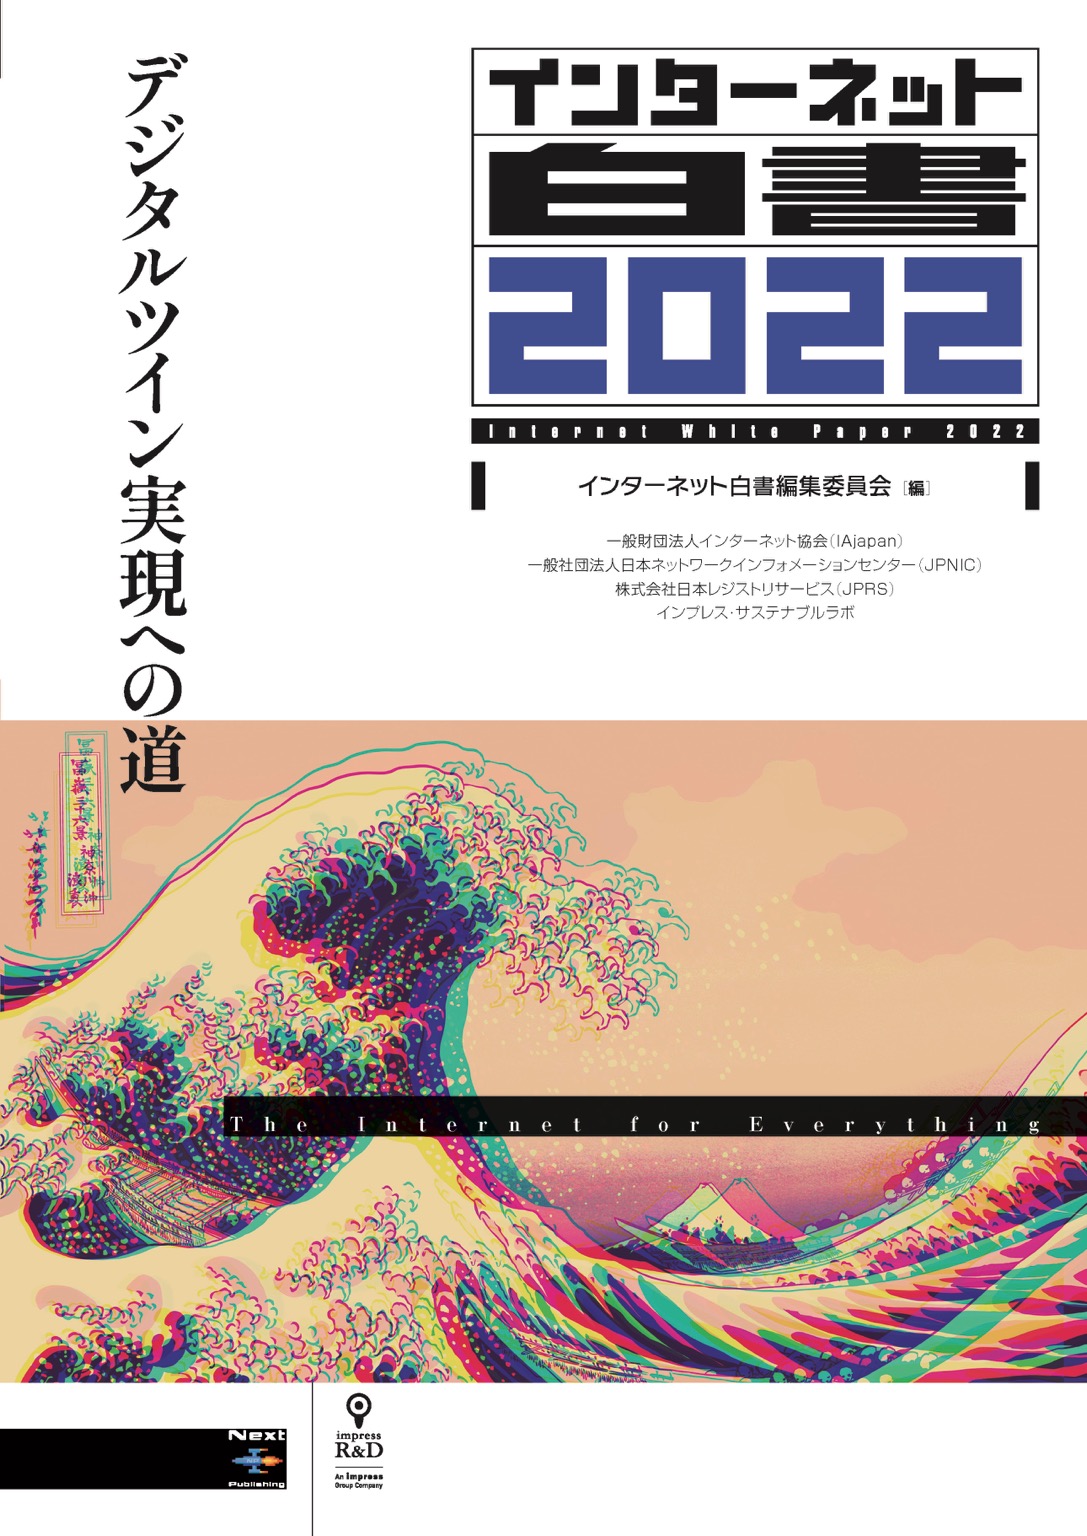 『インターネット白書2022 / デジタルツイン実現への道』（インプレスR&D刊）に寄稿しました。